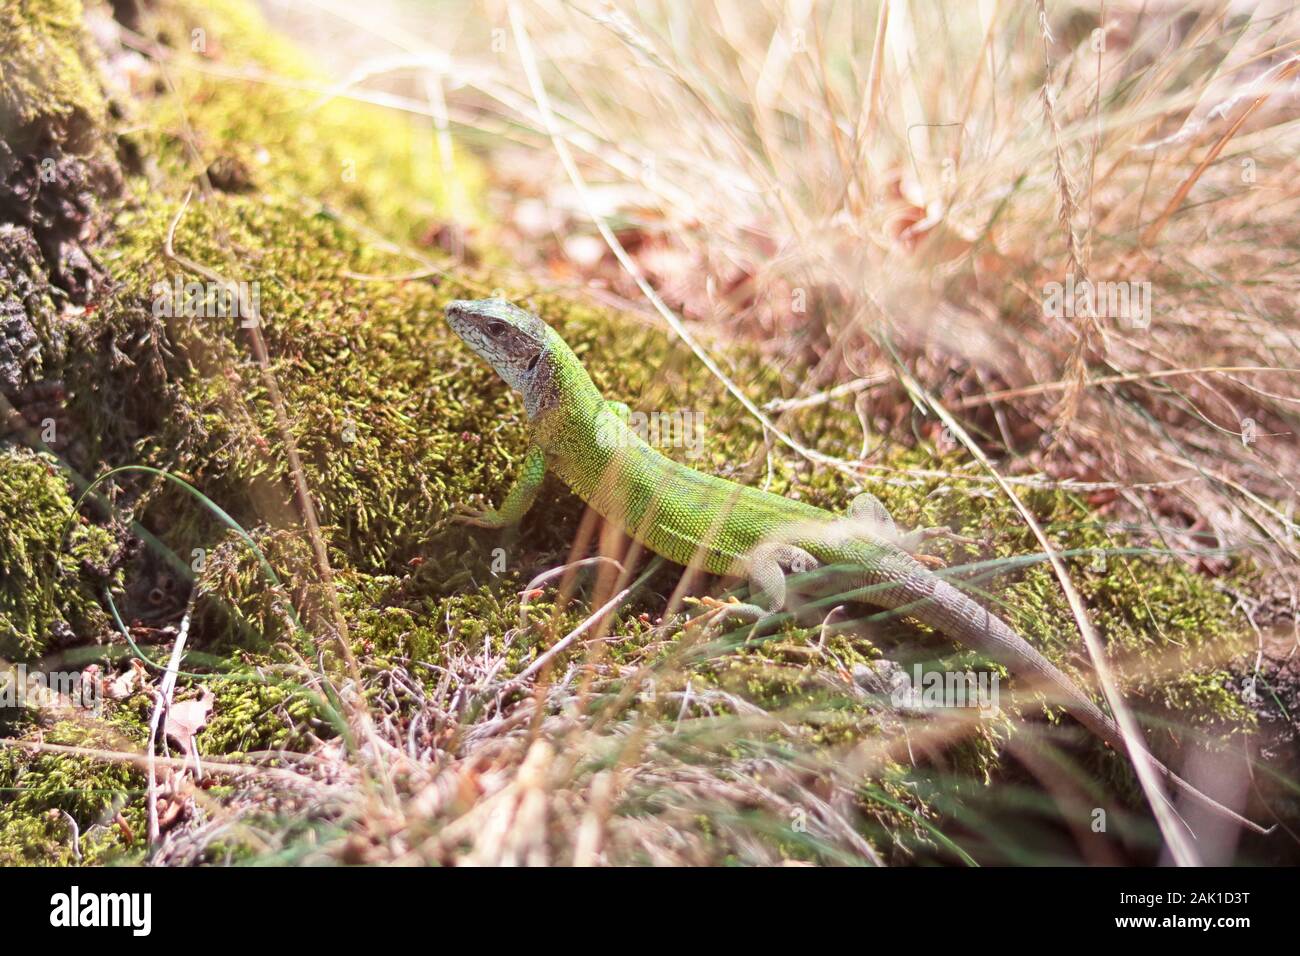 Small green lizard in grass on moss, sunlight Stock Photo